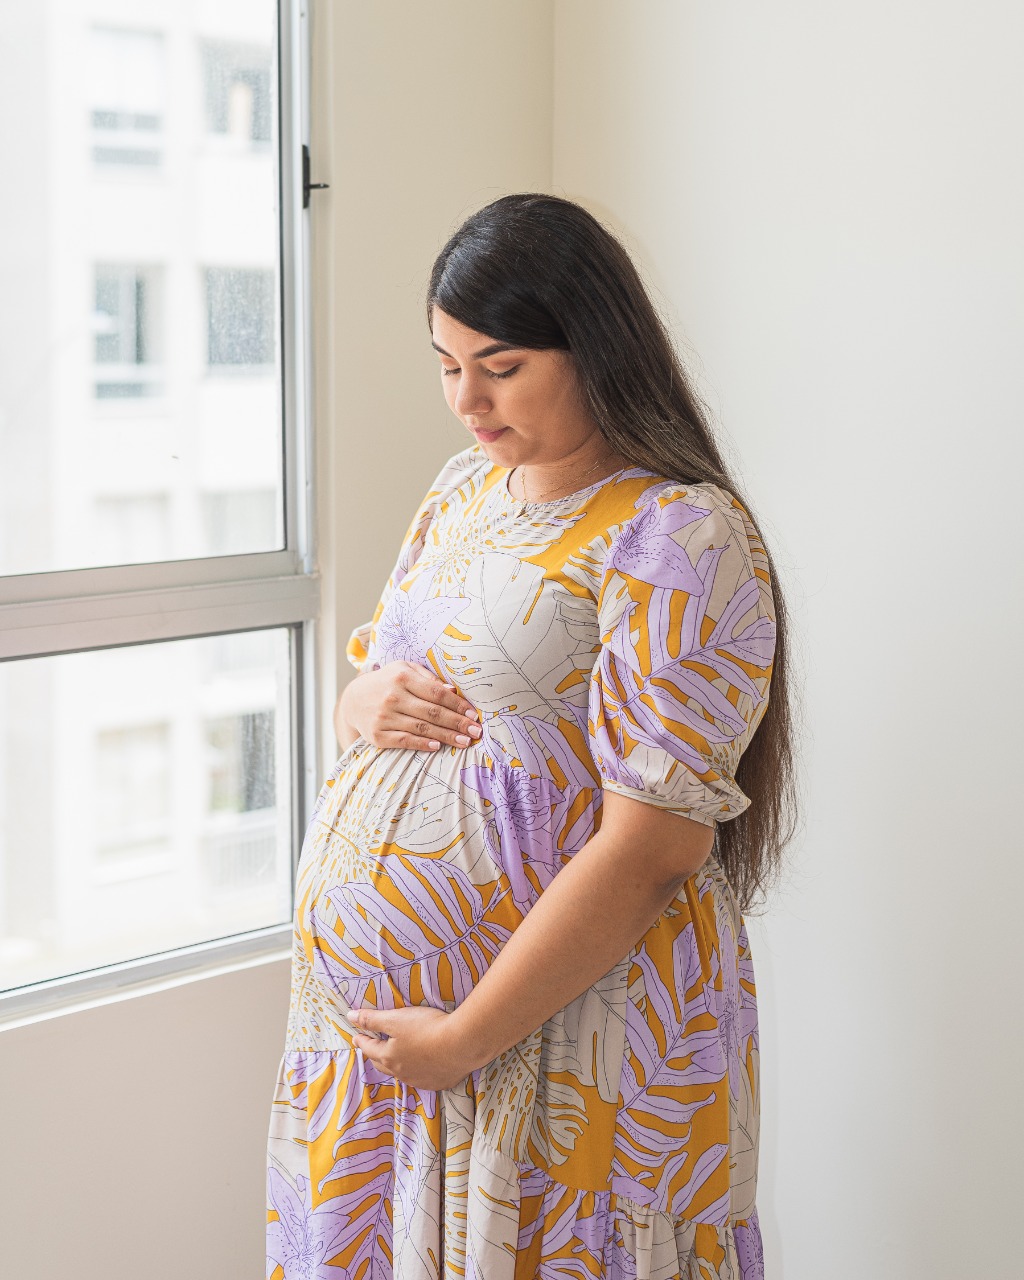 Riesgos durante el embarazo? archivos - Mundo Noticias